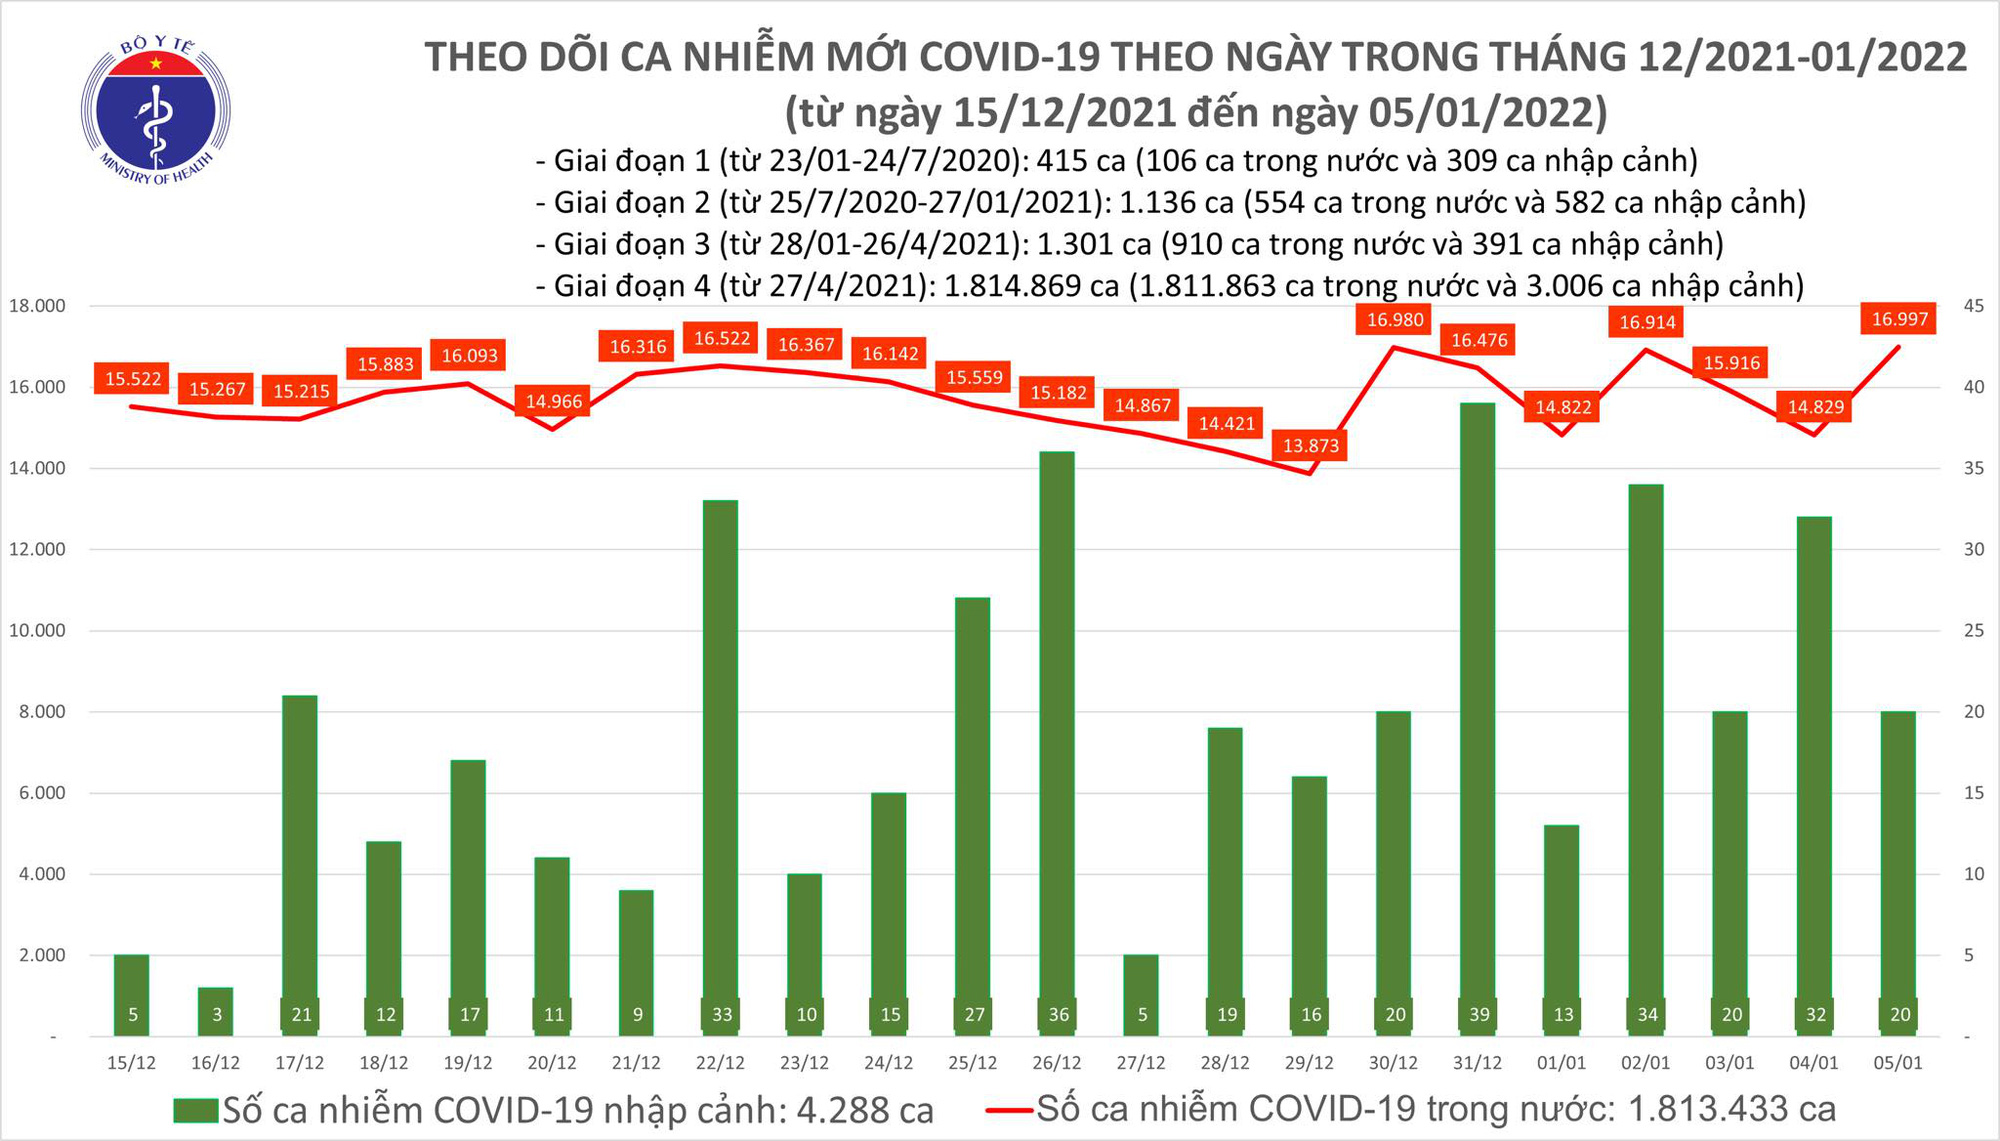 Ngày 5/1: Cả nước có 17.017 ca mắc COVID-19, Hà Nội vẫn nhiều nhất với 2.505 ca - Ảnh 1.